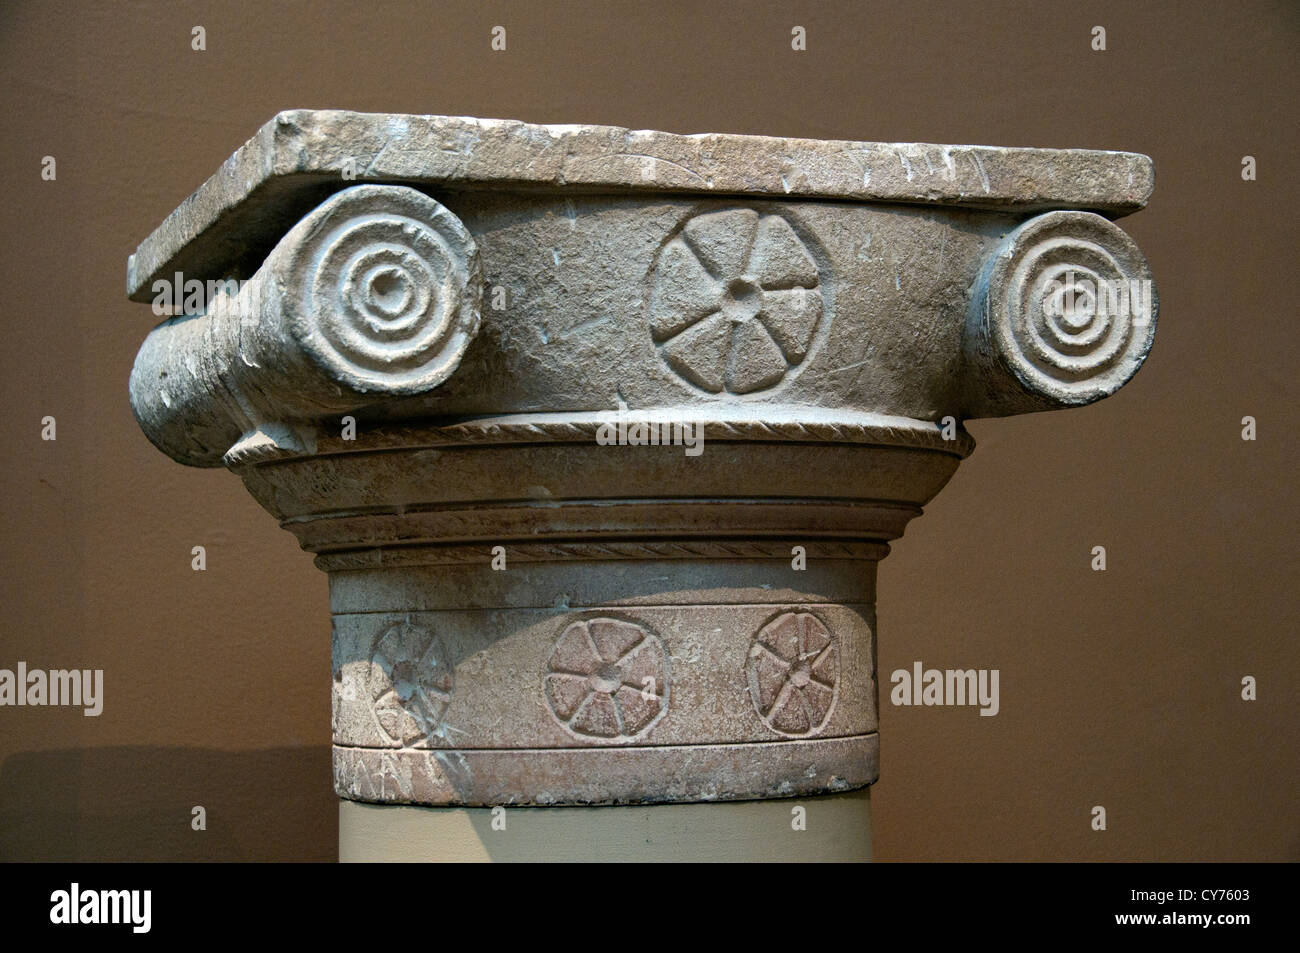 Fête votive de calcaire classique capital 4ème siècle avant J.-C. La sculpture sur pierre chypriote grecque de Chypre Grèce Banque D'Images